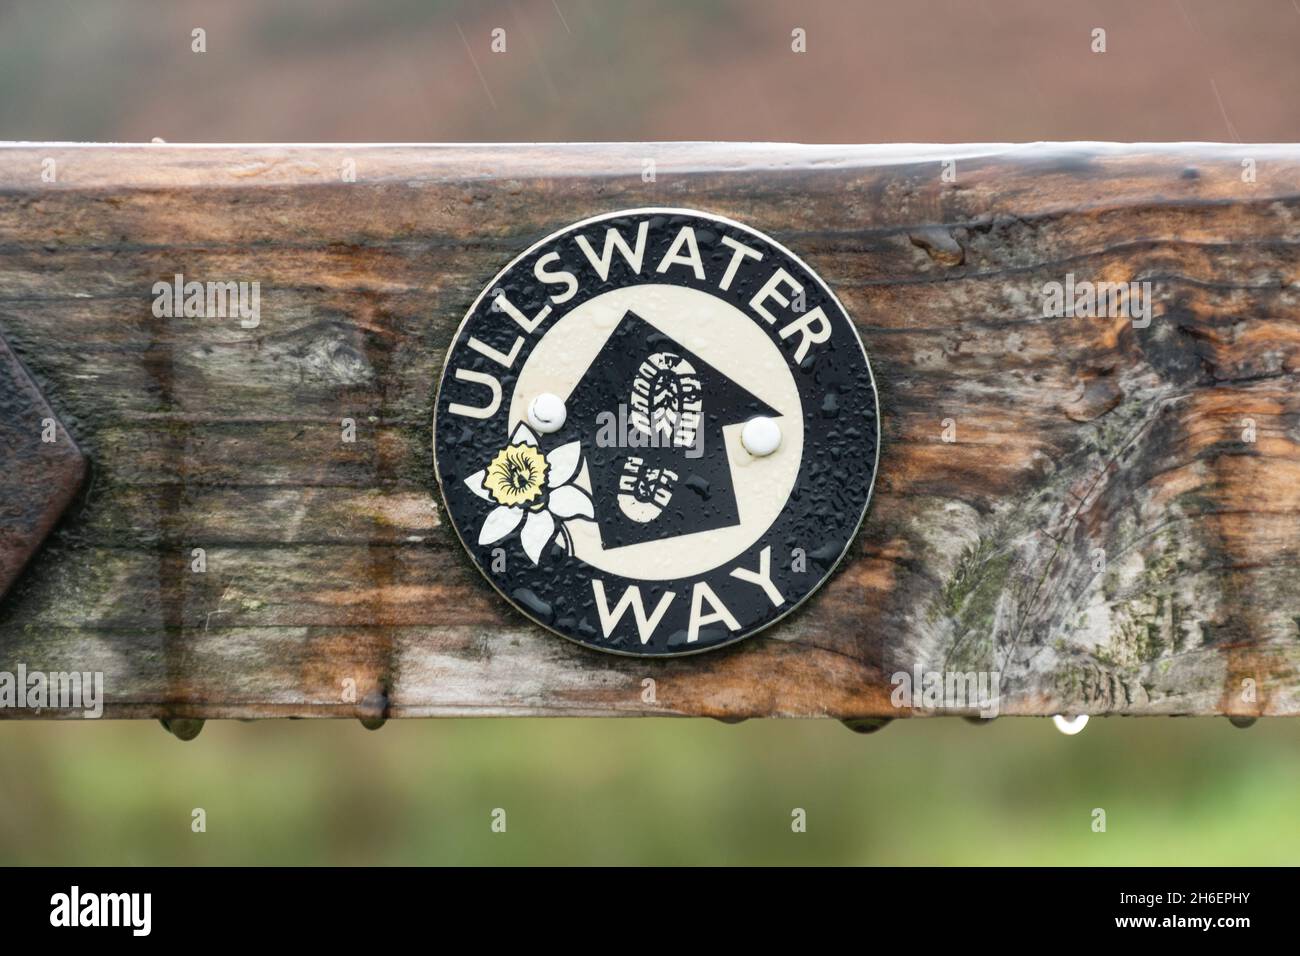 Panneau de sentier Ullswater Way lors d'un jour de pluie dans le Lake District de Cumbria, Angleterre, Royaume-Uni Banque D'Images